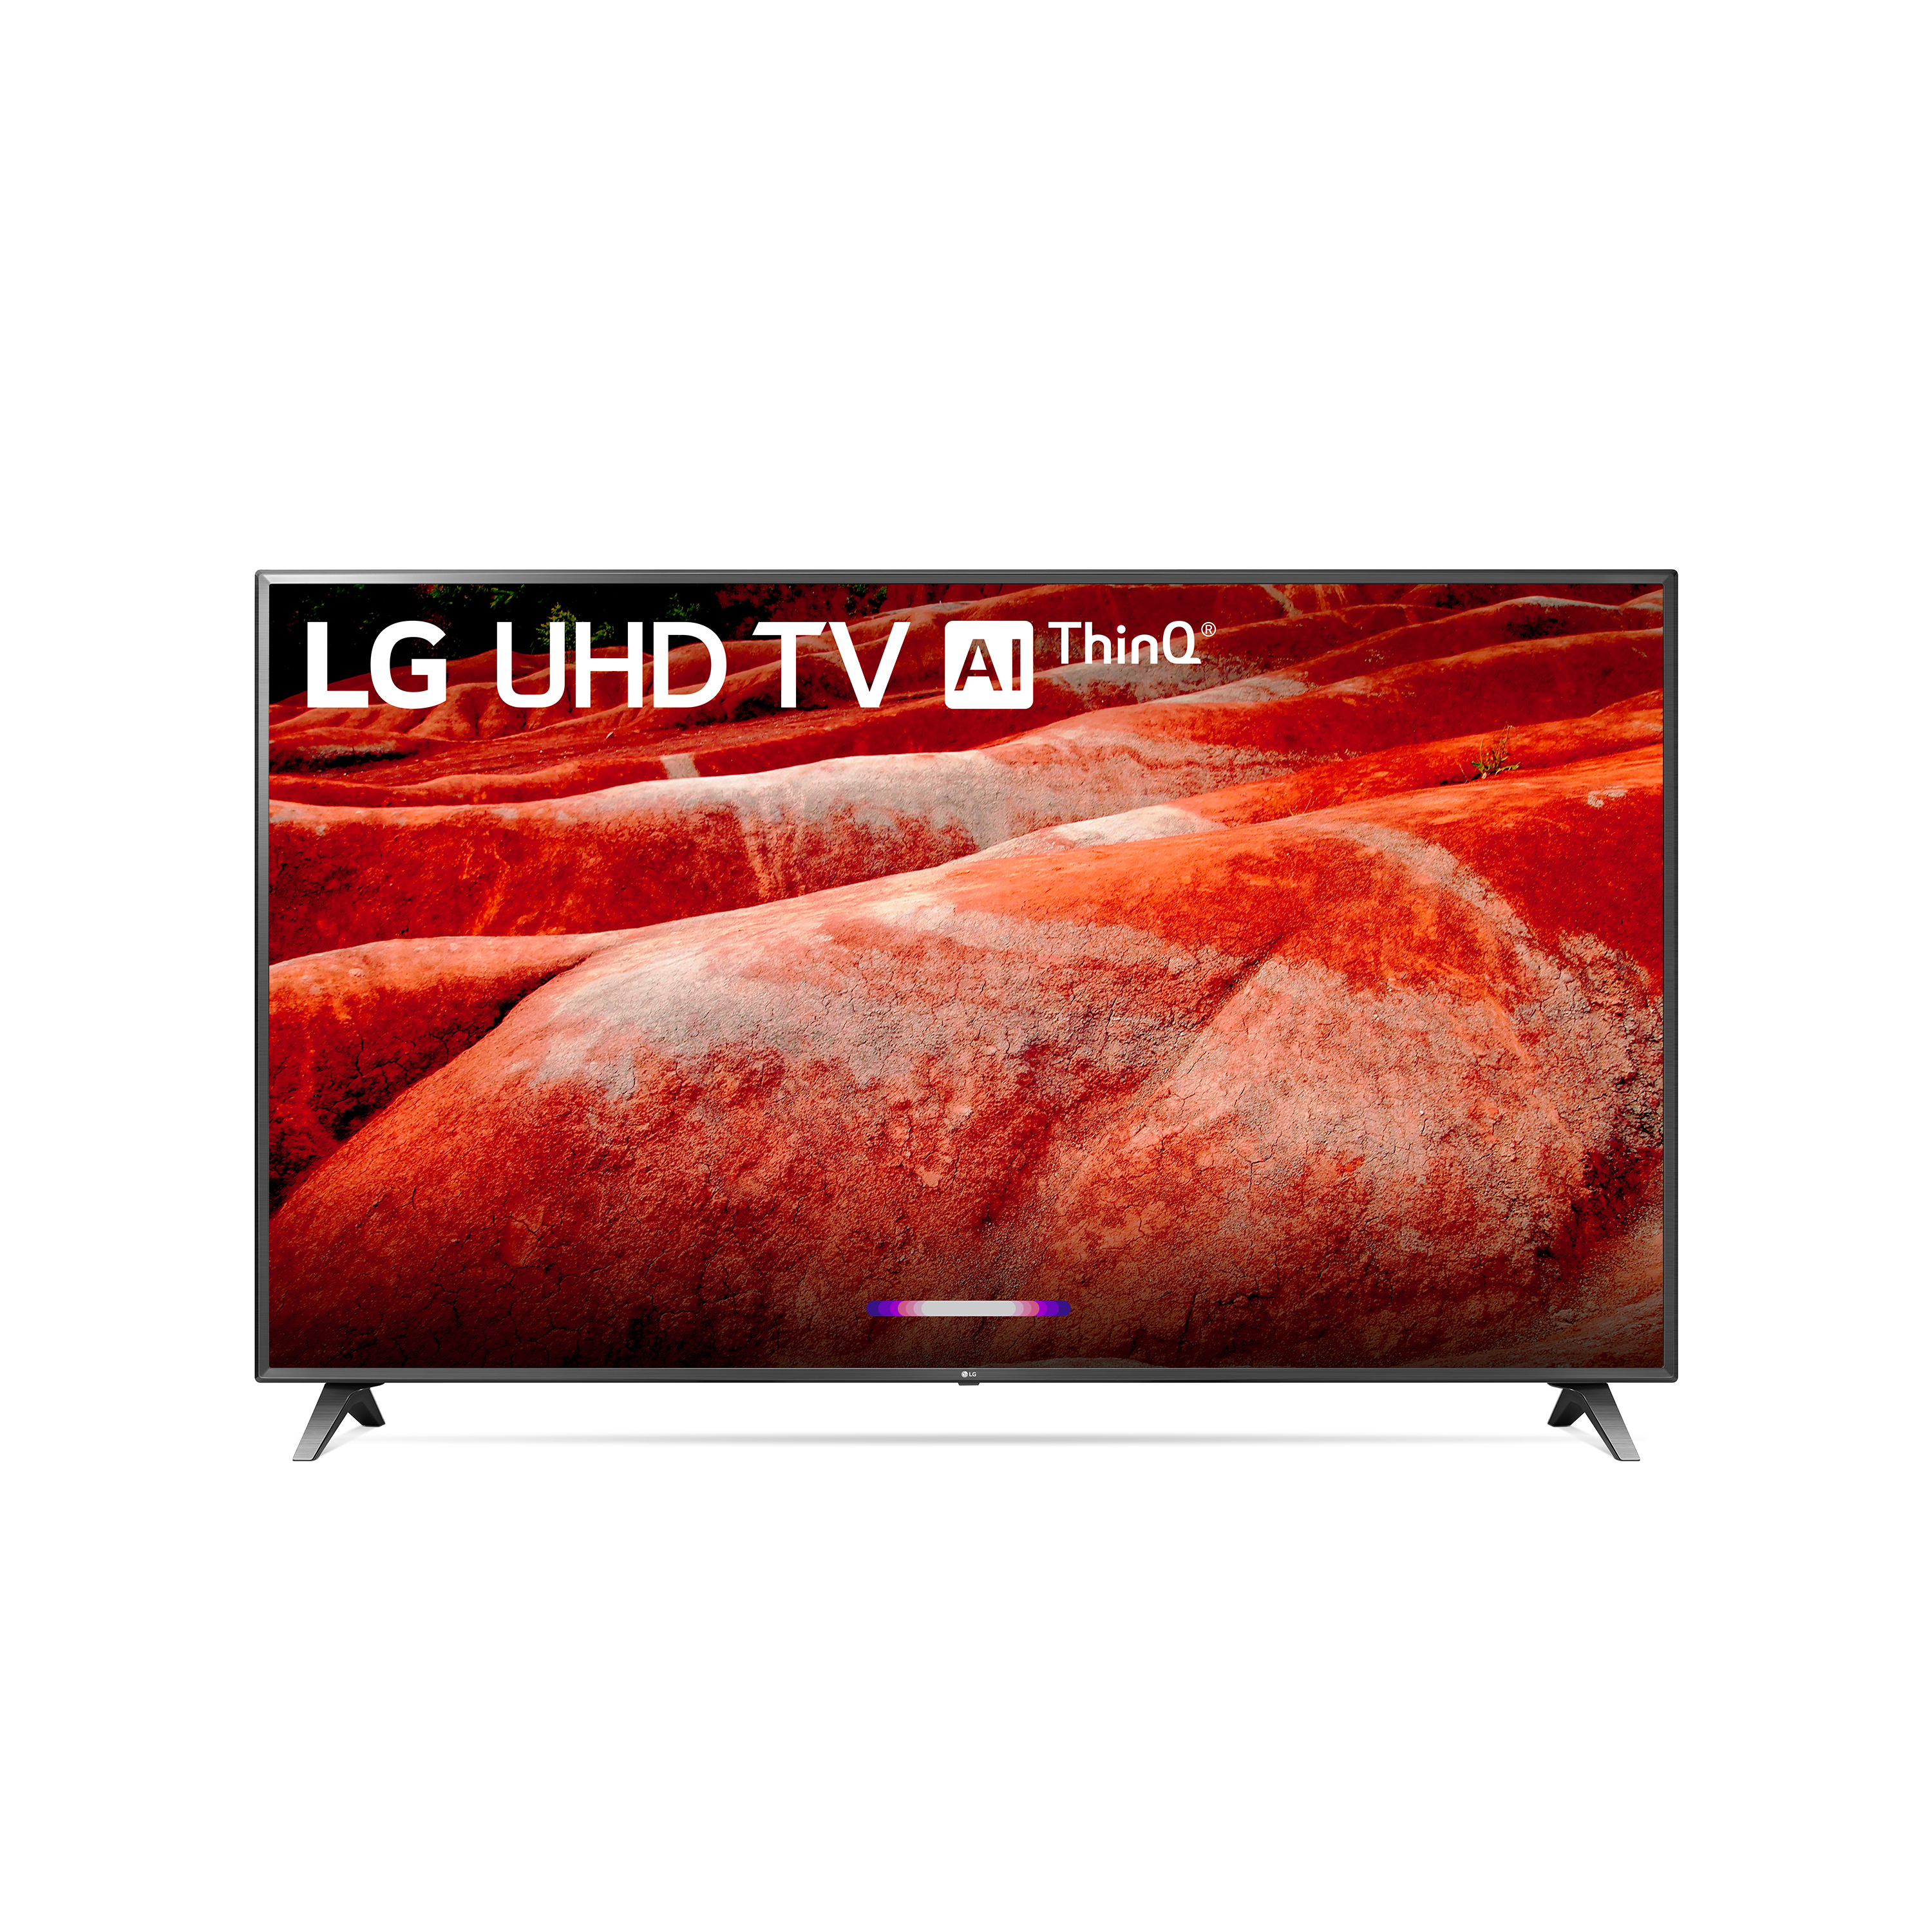 LG 86" Class 4K (2160P) Ultra HD Smart LED HDR TV 86UM8070PUA 2019 Model - image 1 of 14